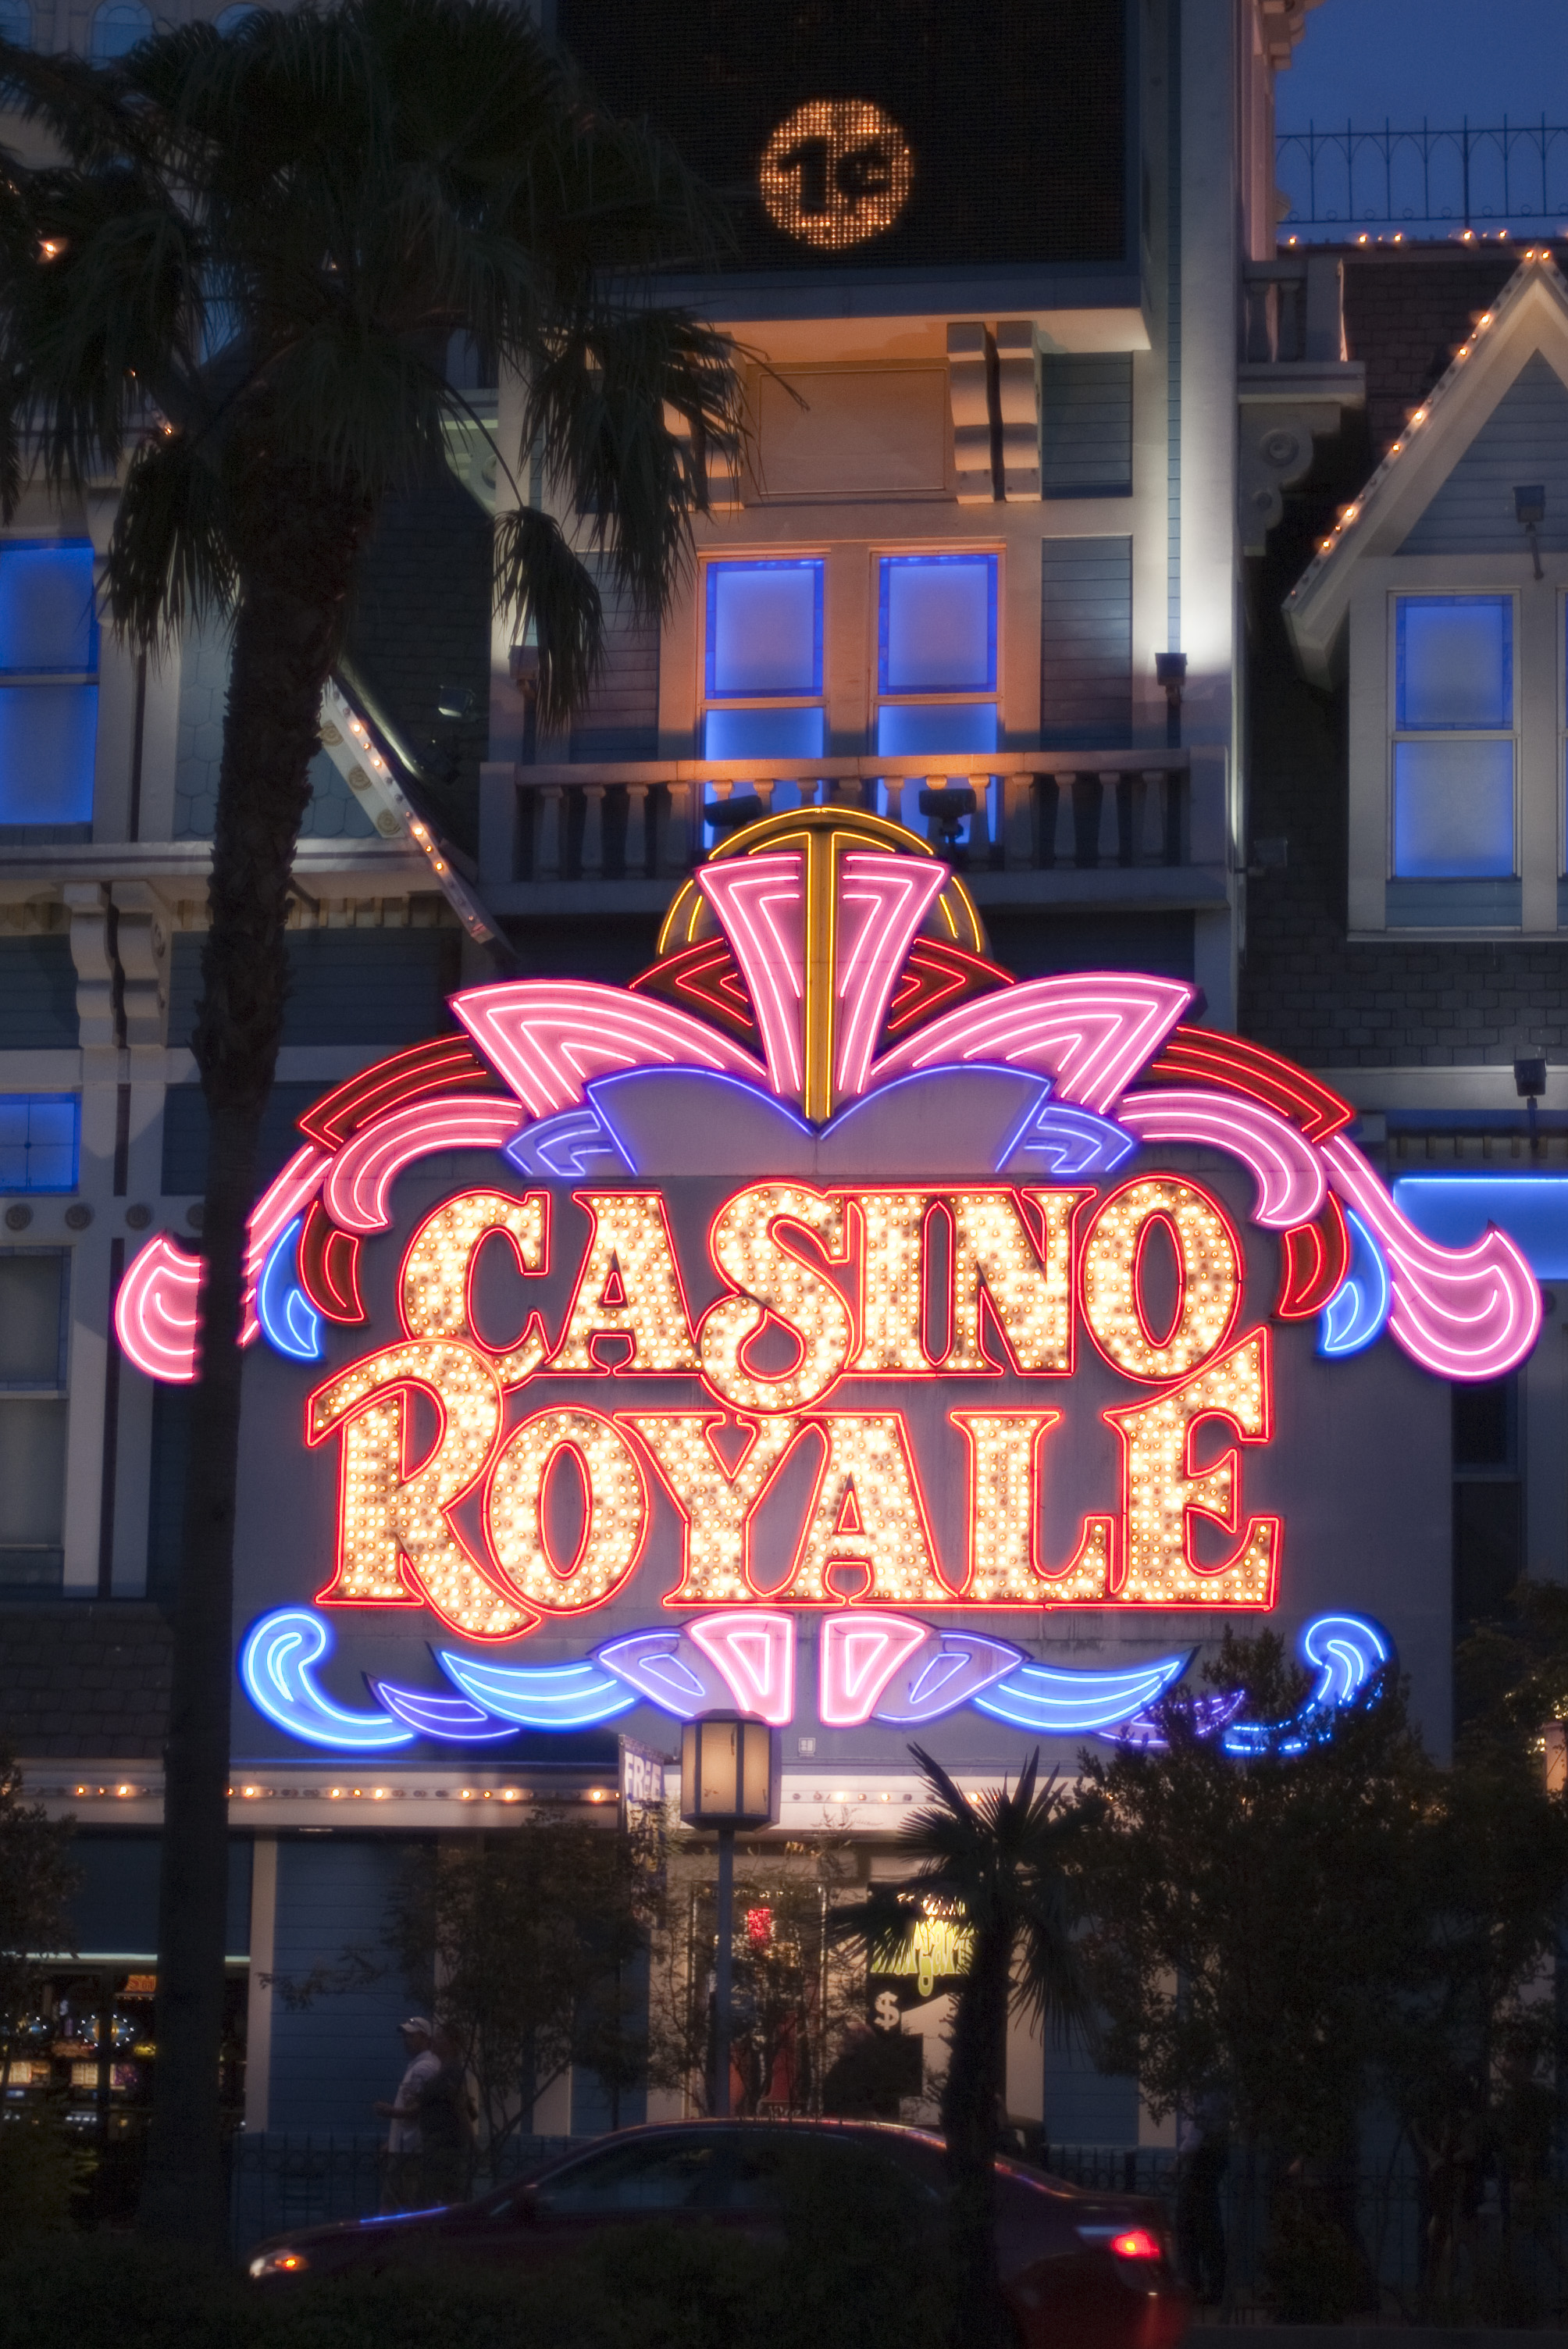 Vegas Royal Casino